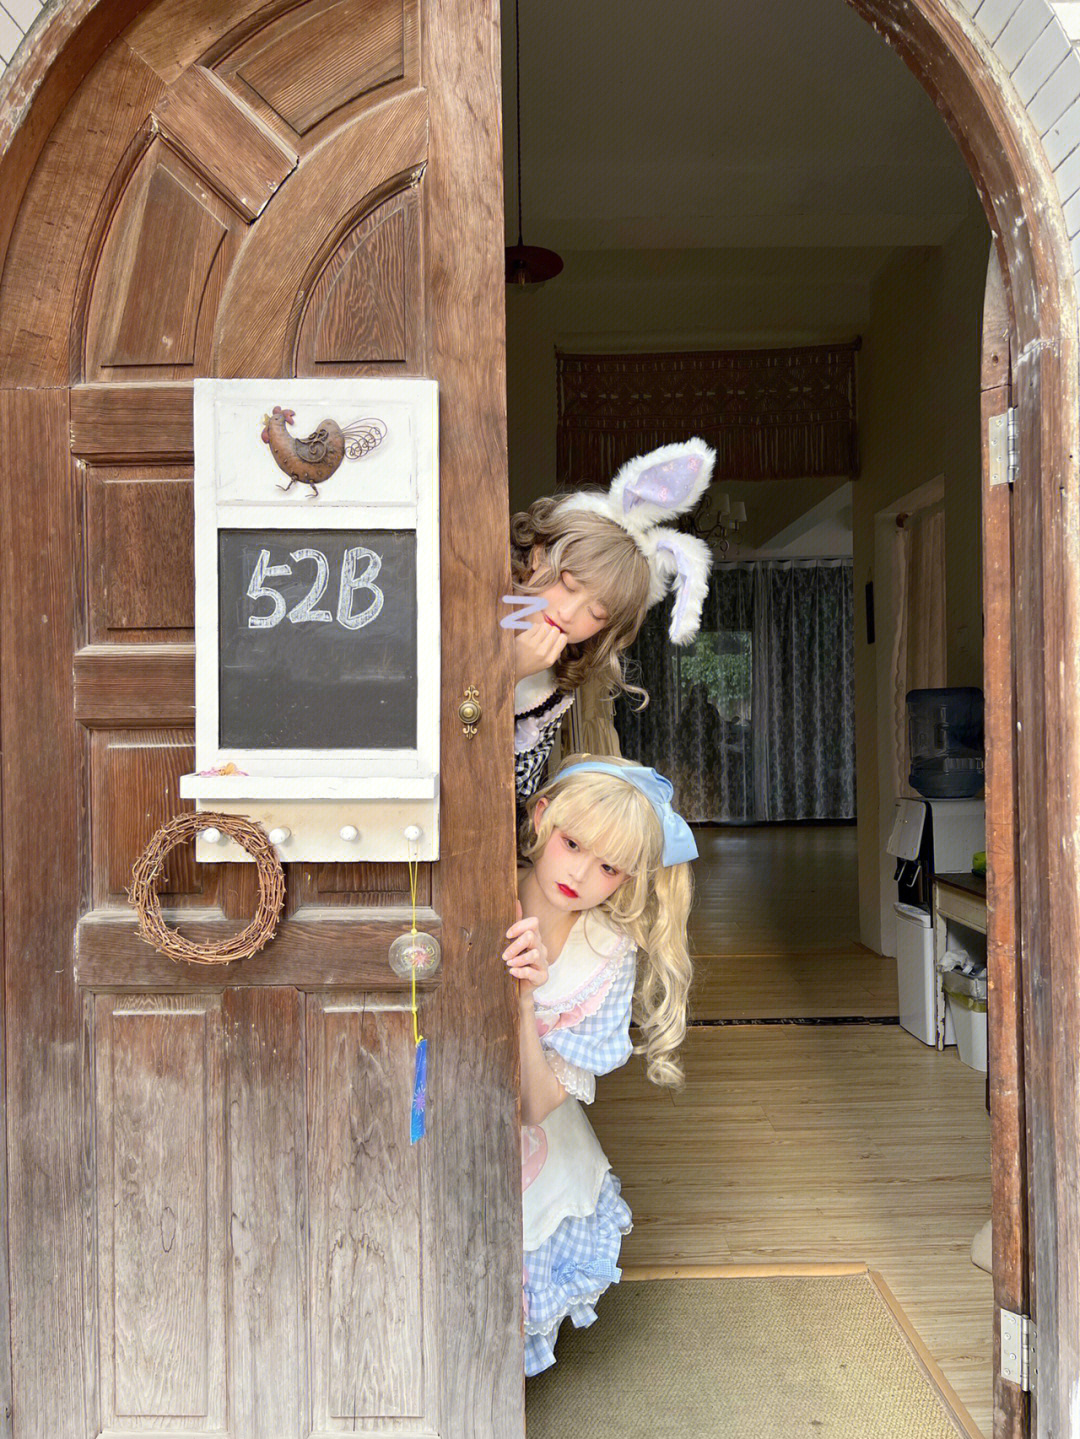 叩叩小兔子带你进入爱丽丝的梦境